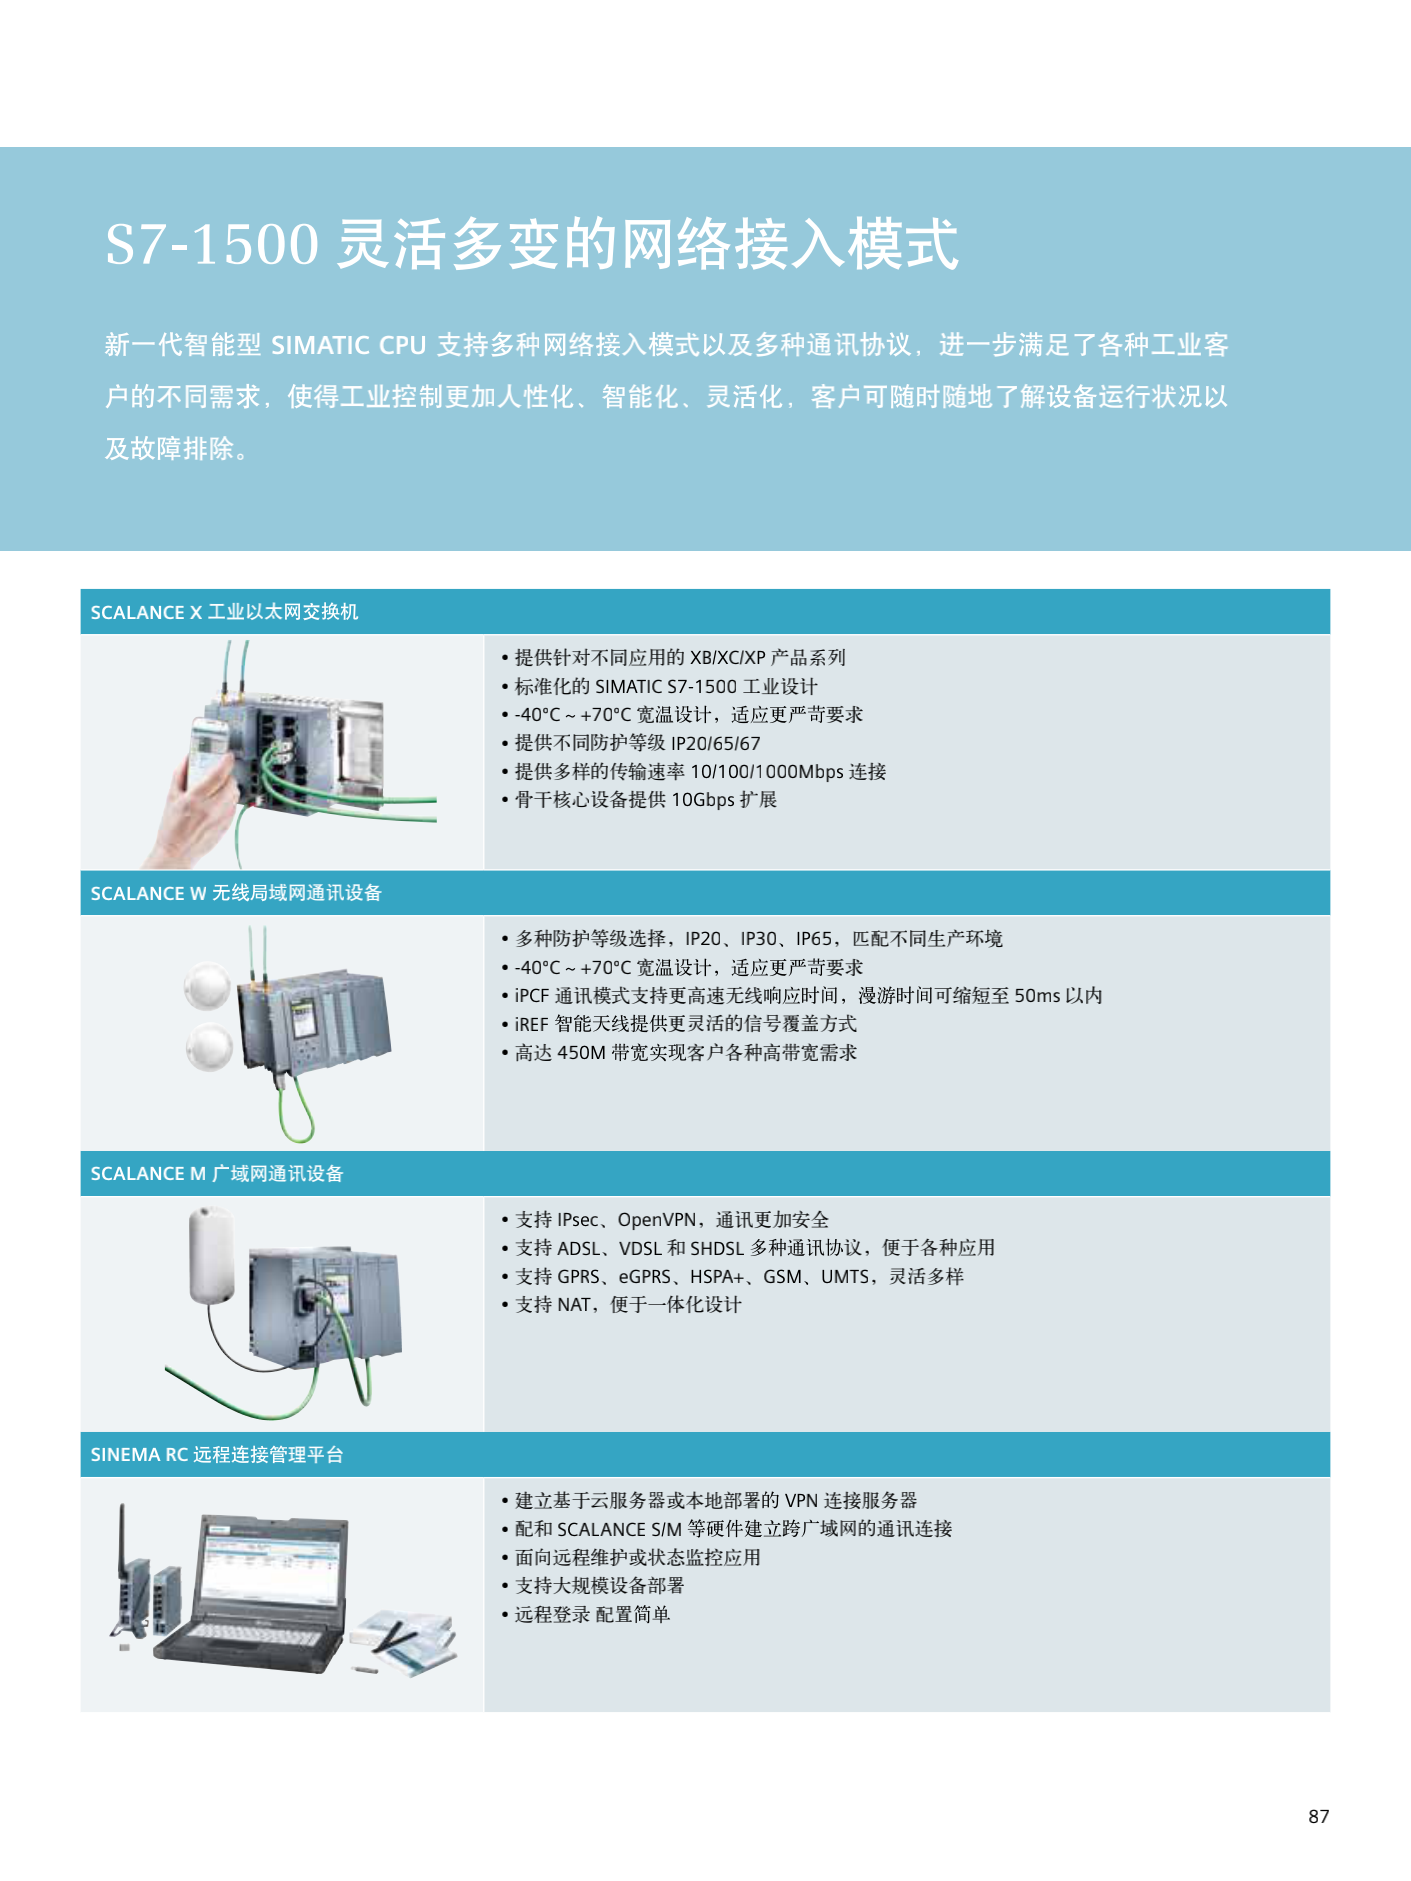 重庆市西门子1500模块CPU
代理商